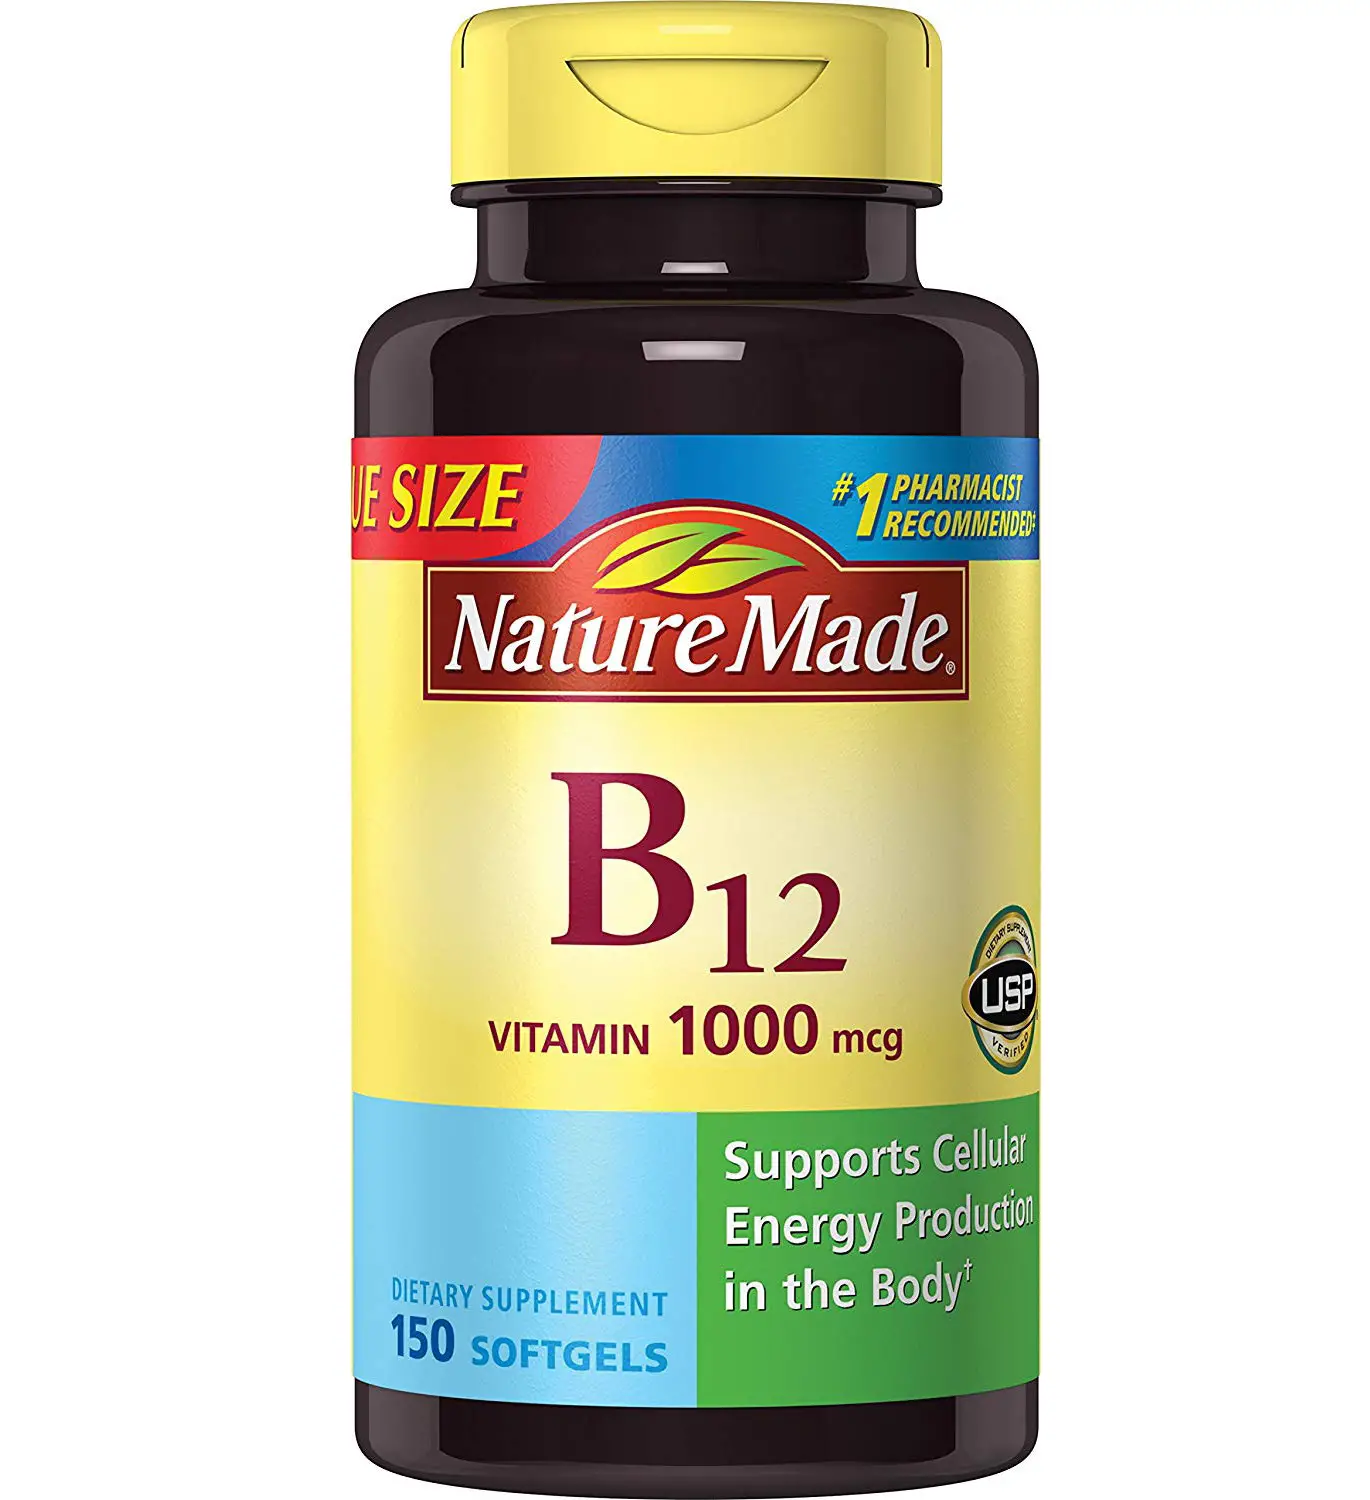 Hair Loss And Vitamin B12